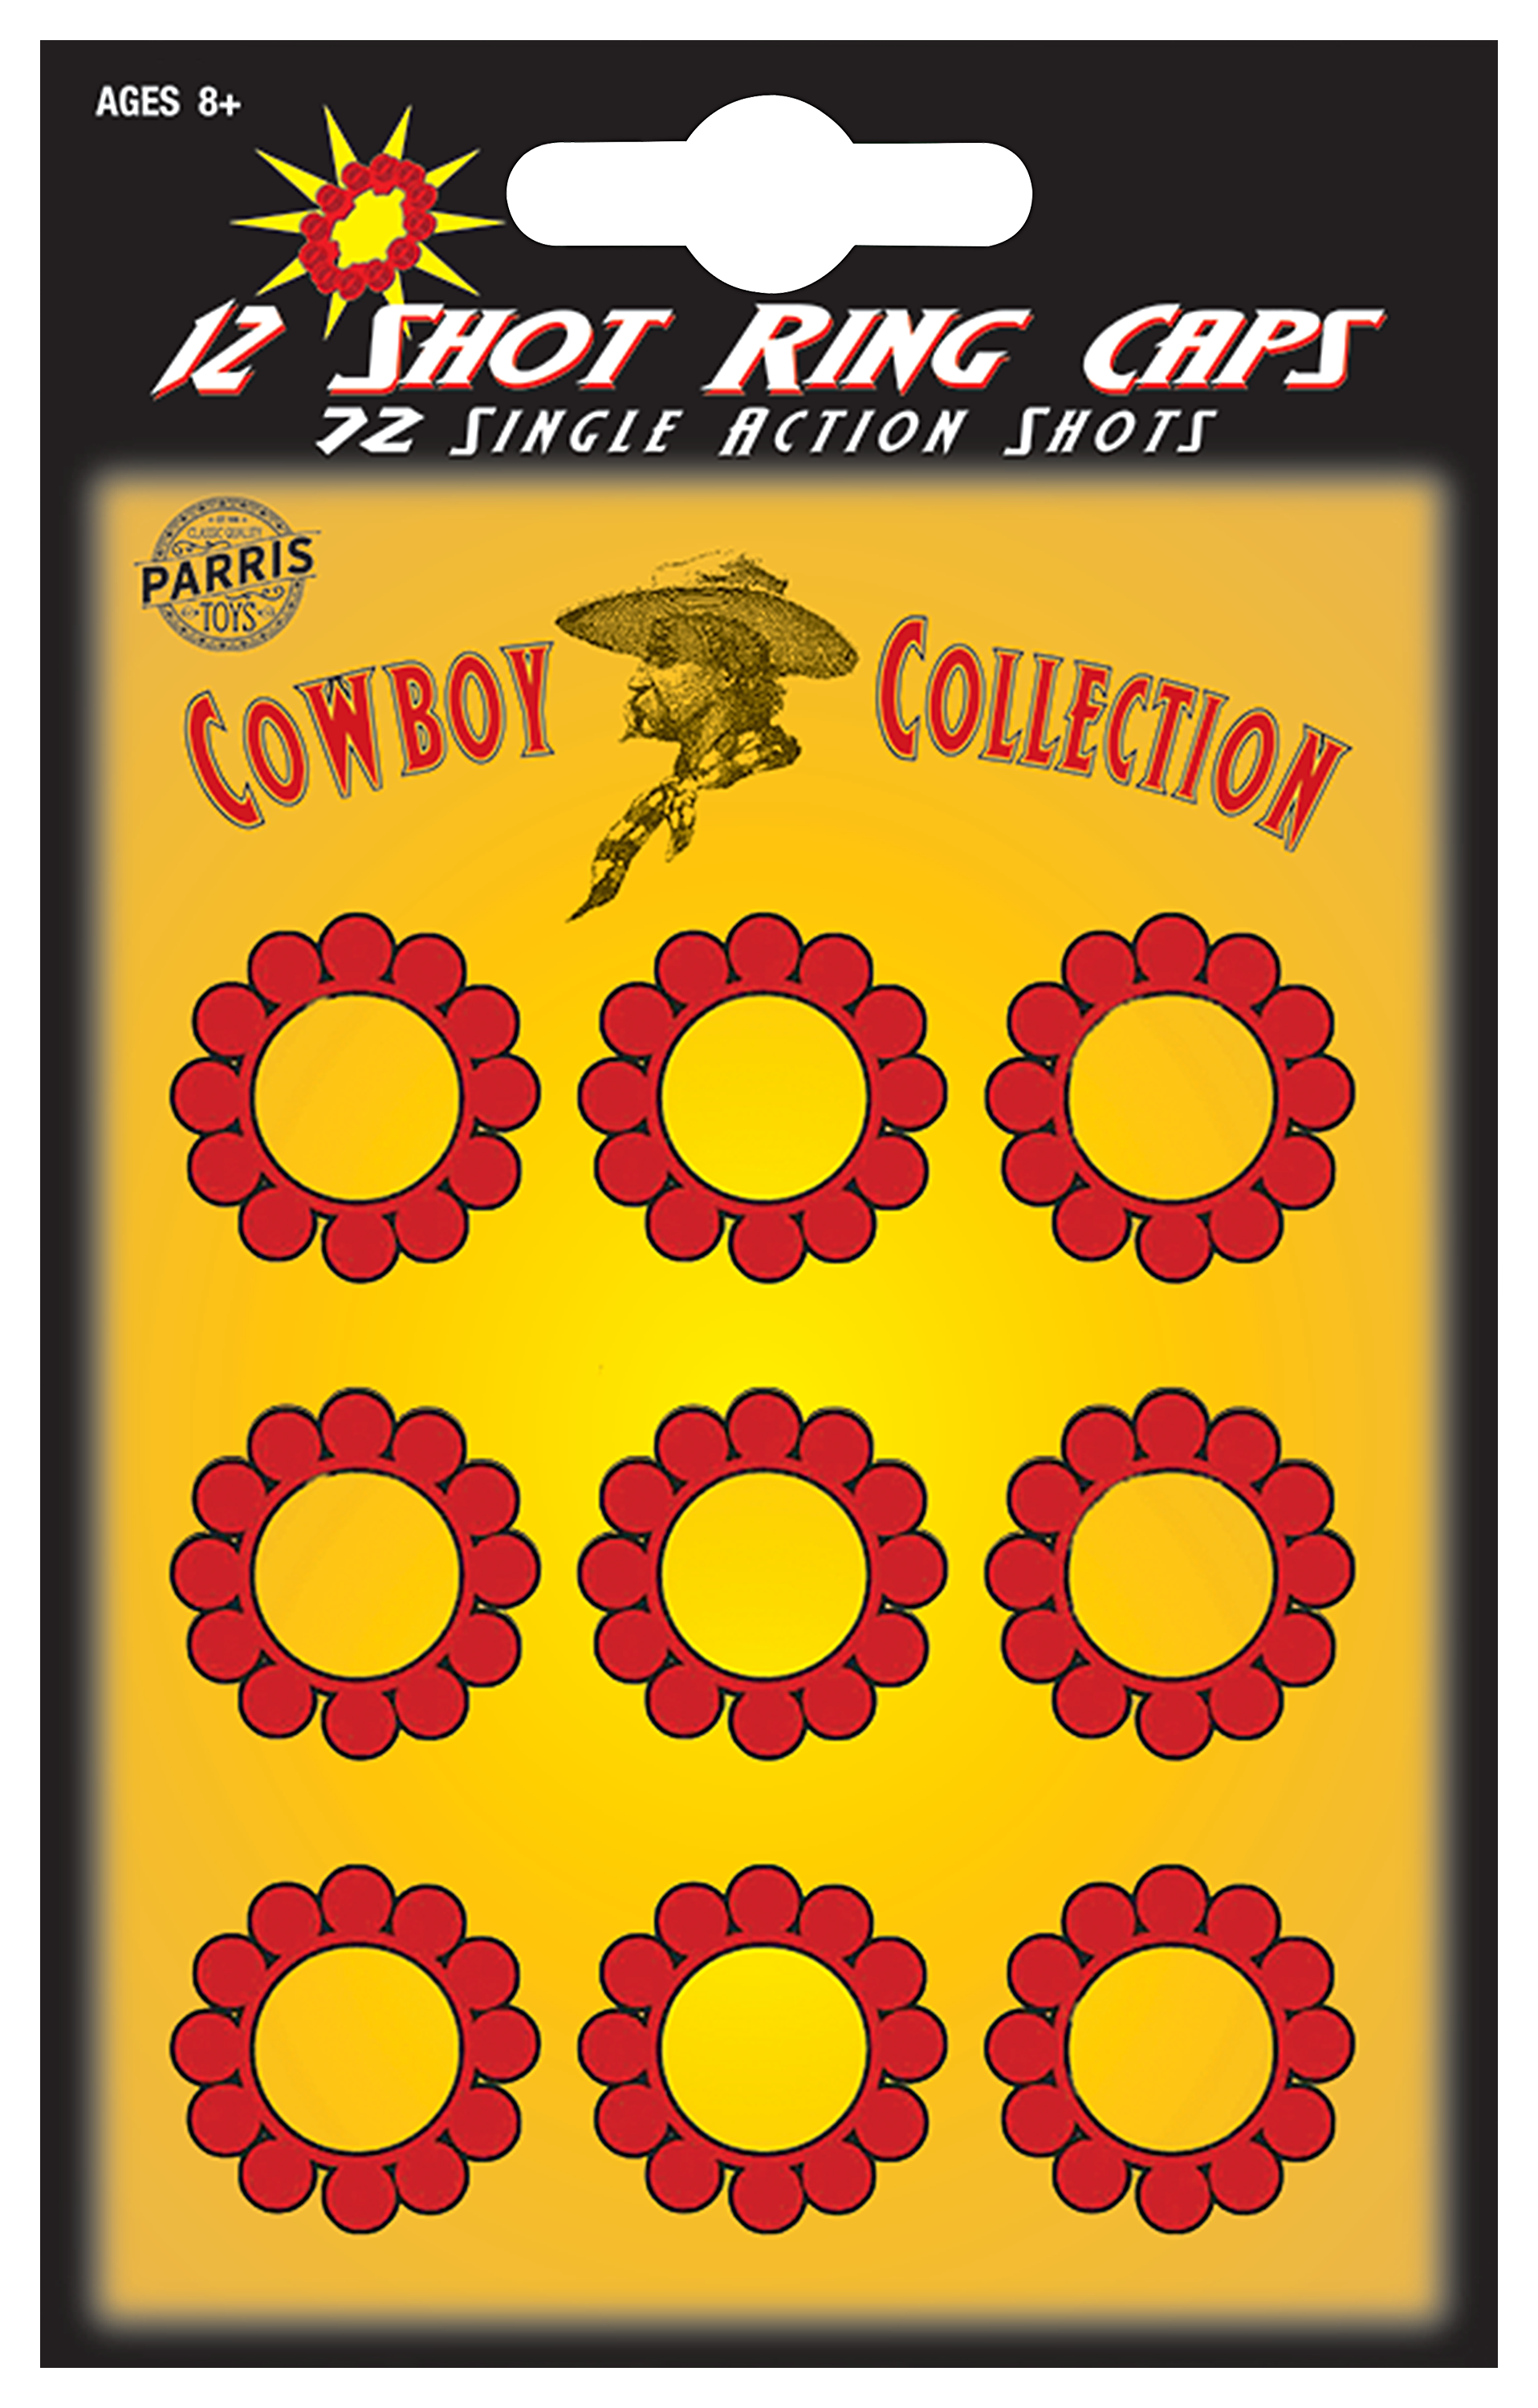 uitvinding hangen bod Parris Toys Cowboy Collection Ring Caps for Cap Gun Toys | Bass Pro Shops